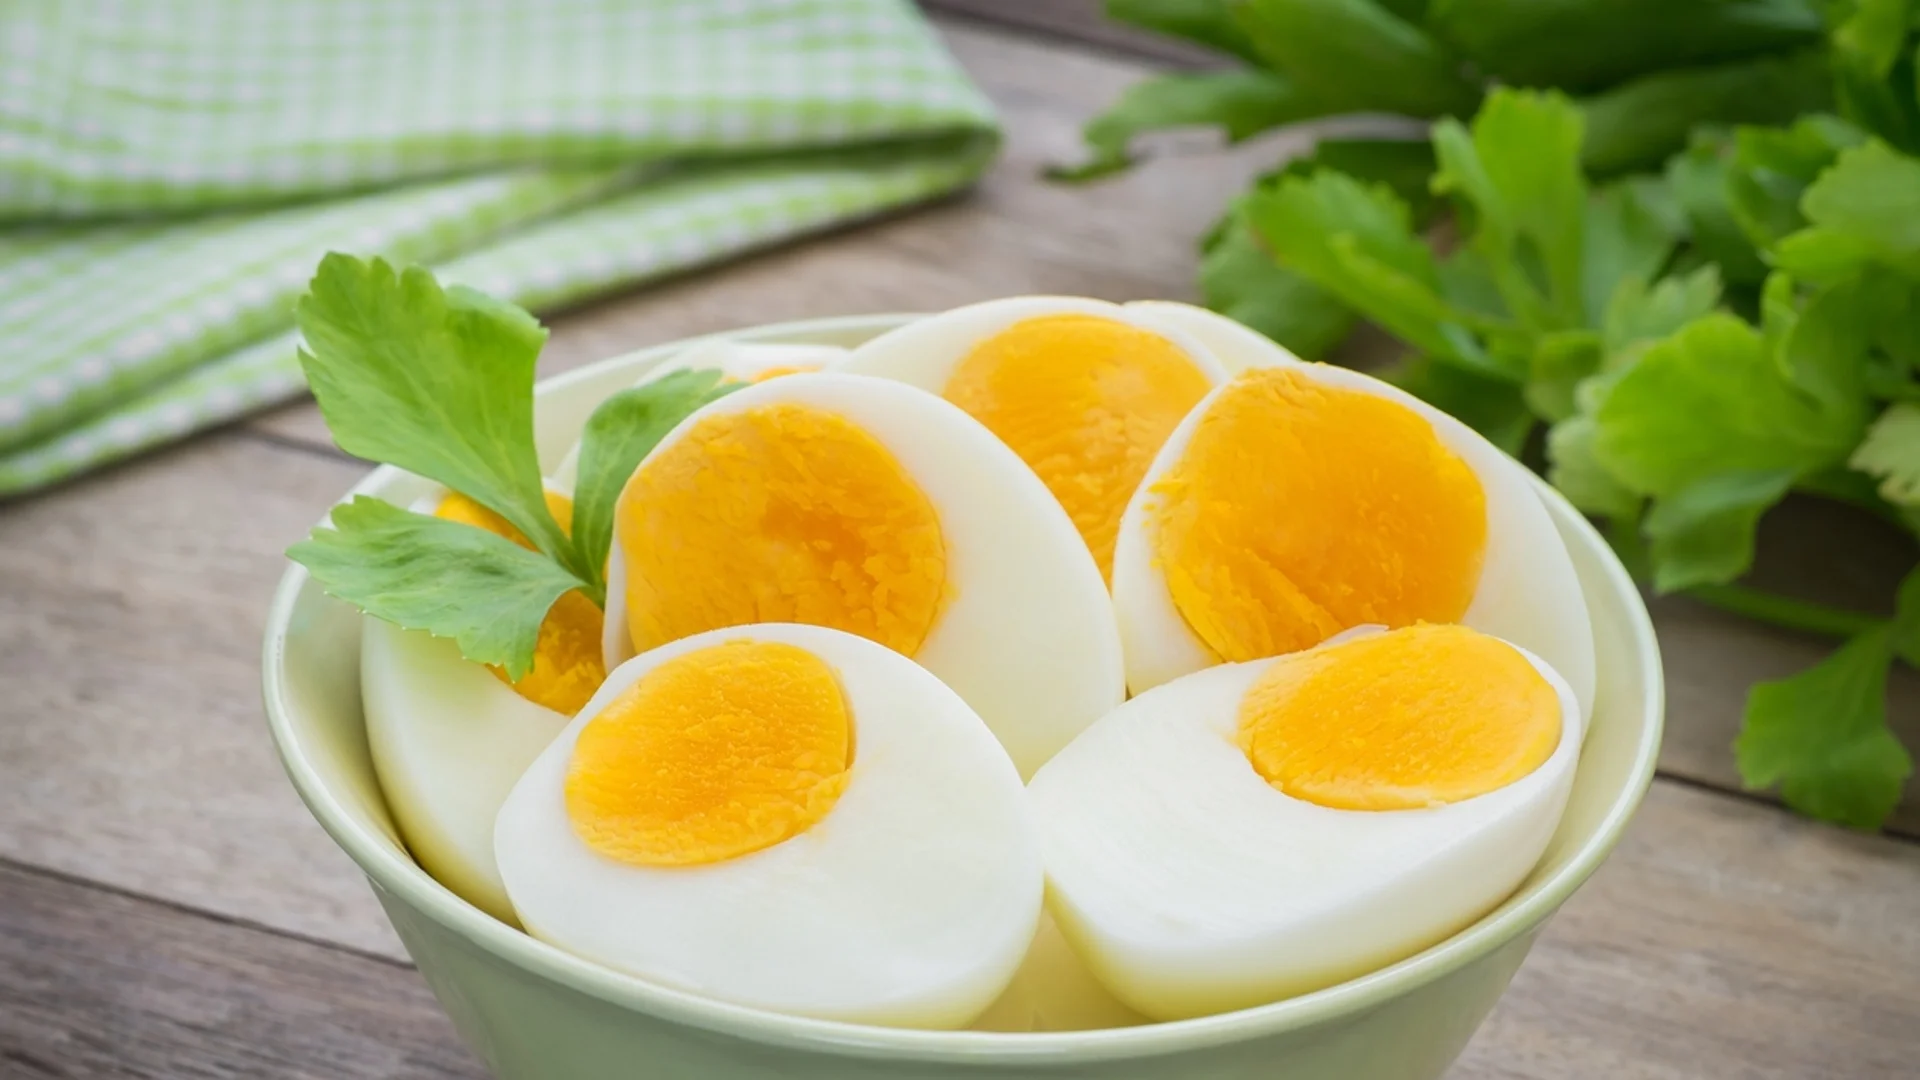 Никога не комбинирайте яйцата с тези продукти, подува се стомахът